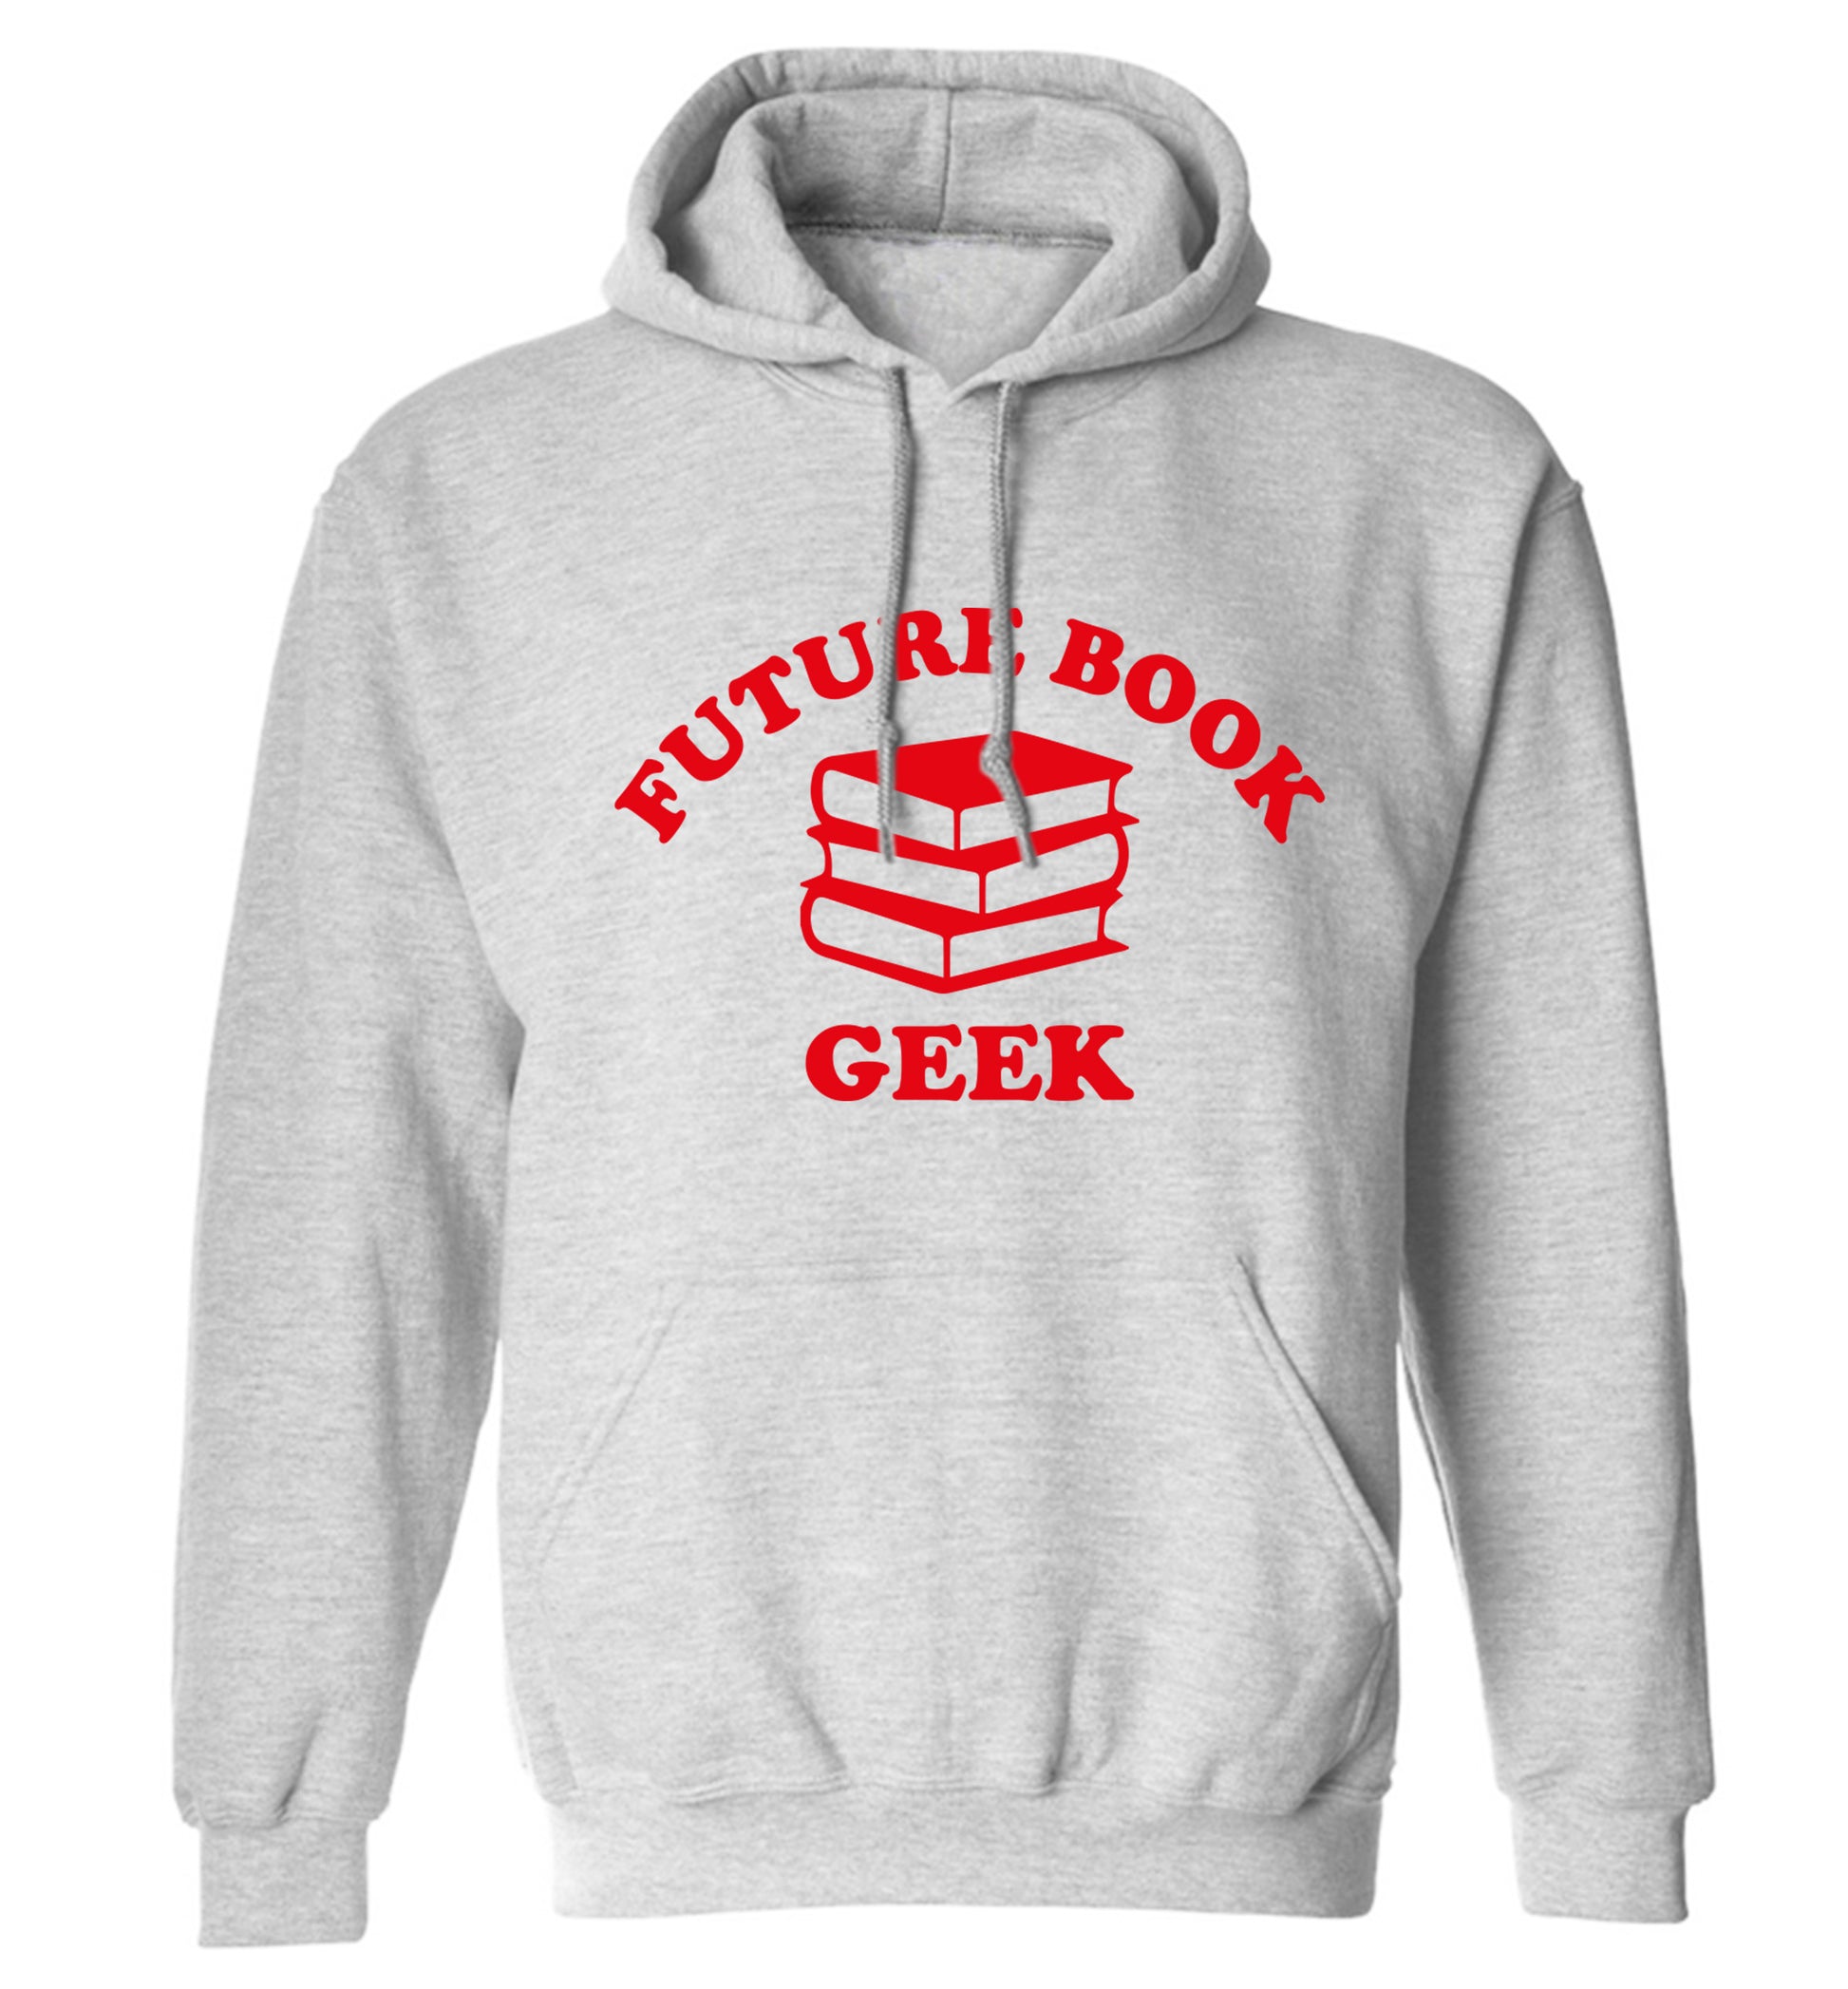 Future book geek adults unisex grey hoodie 2XL